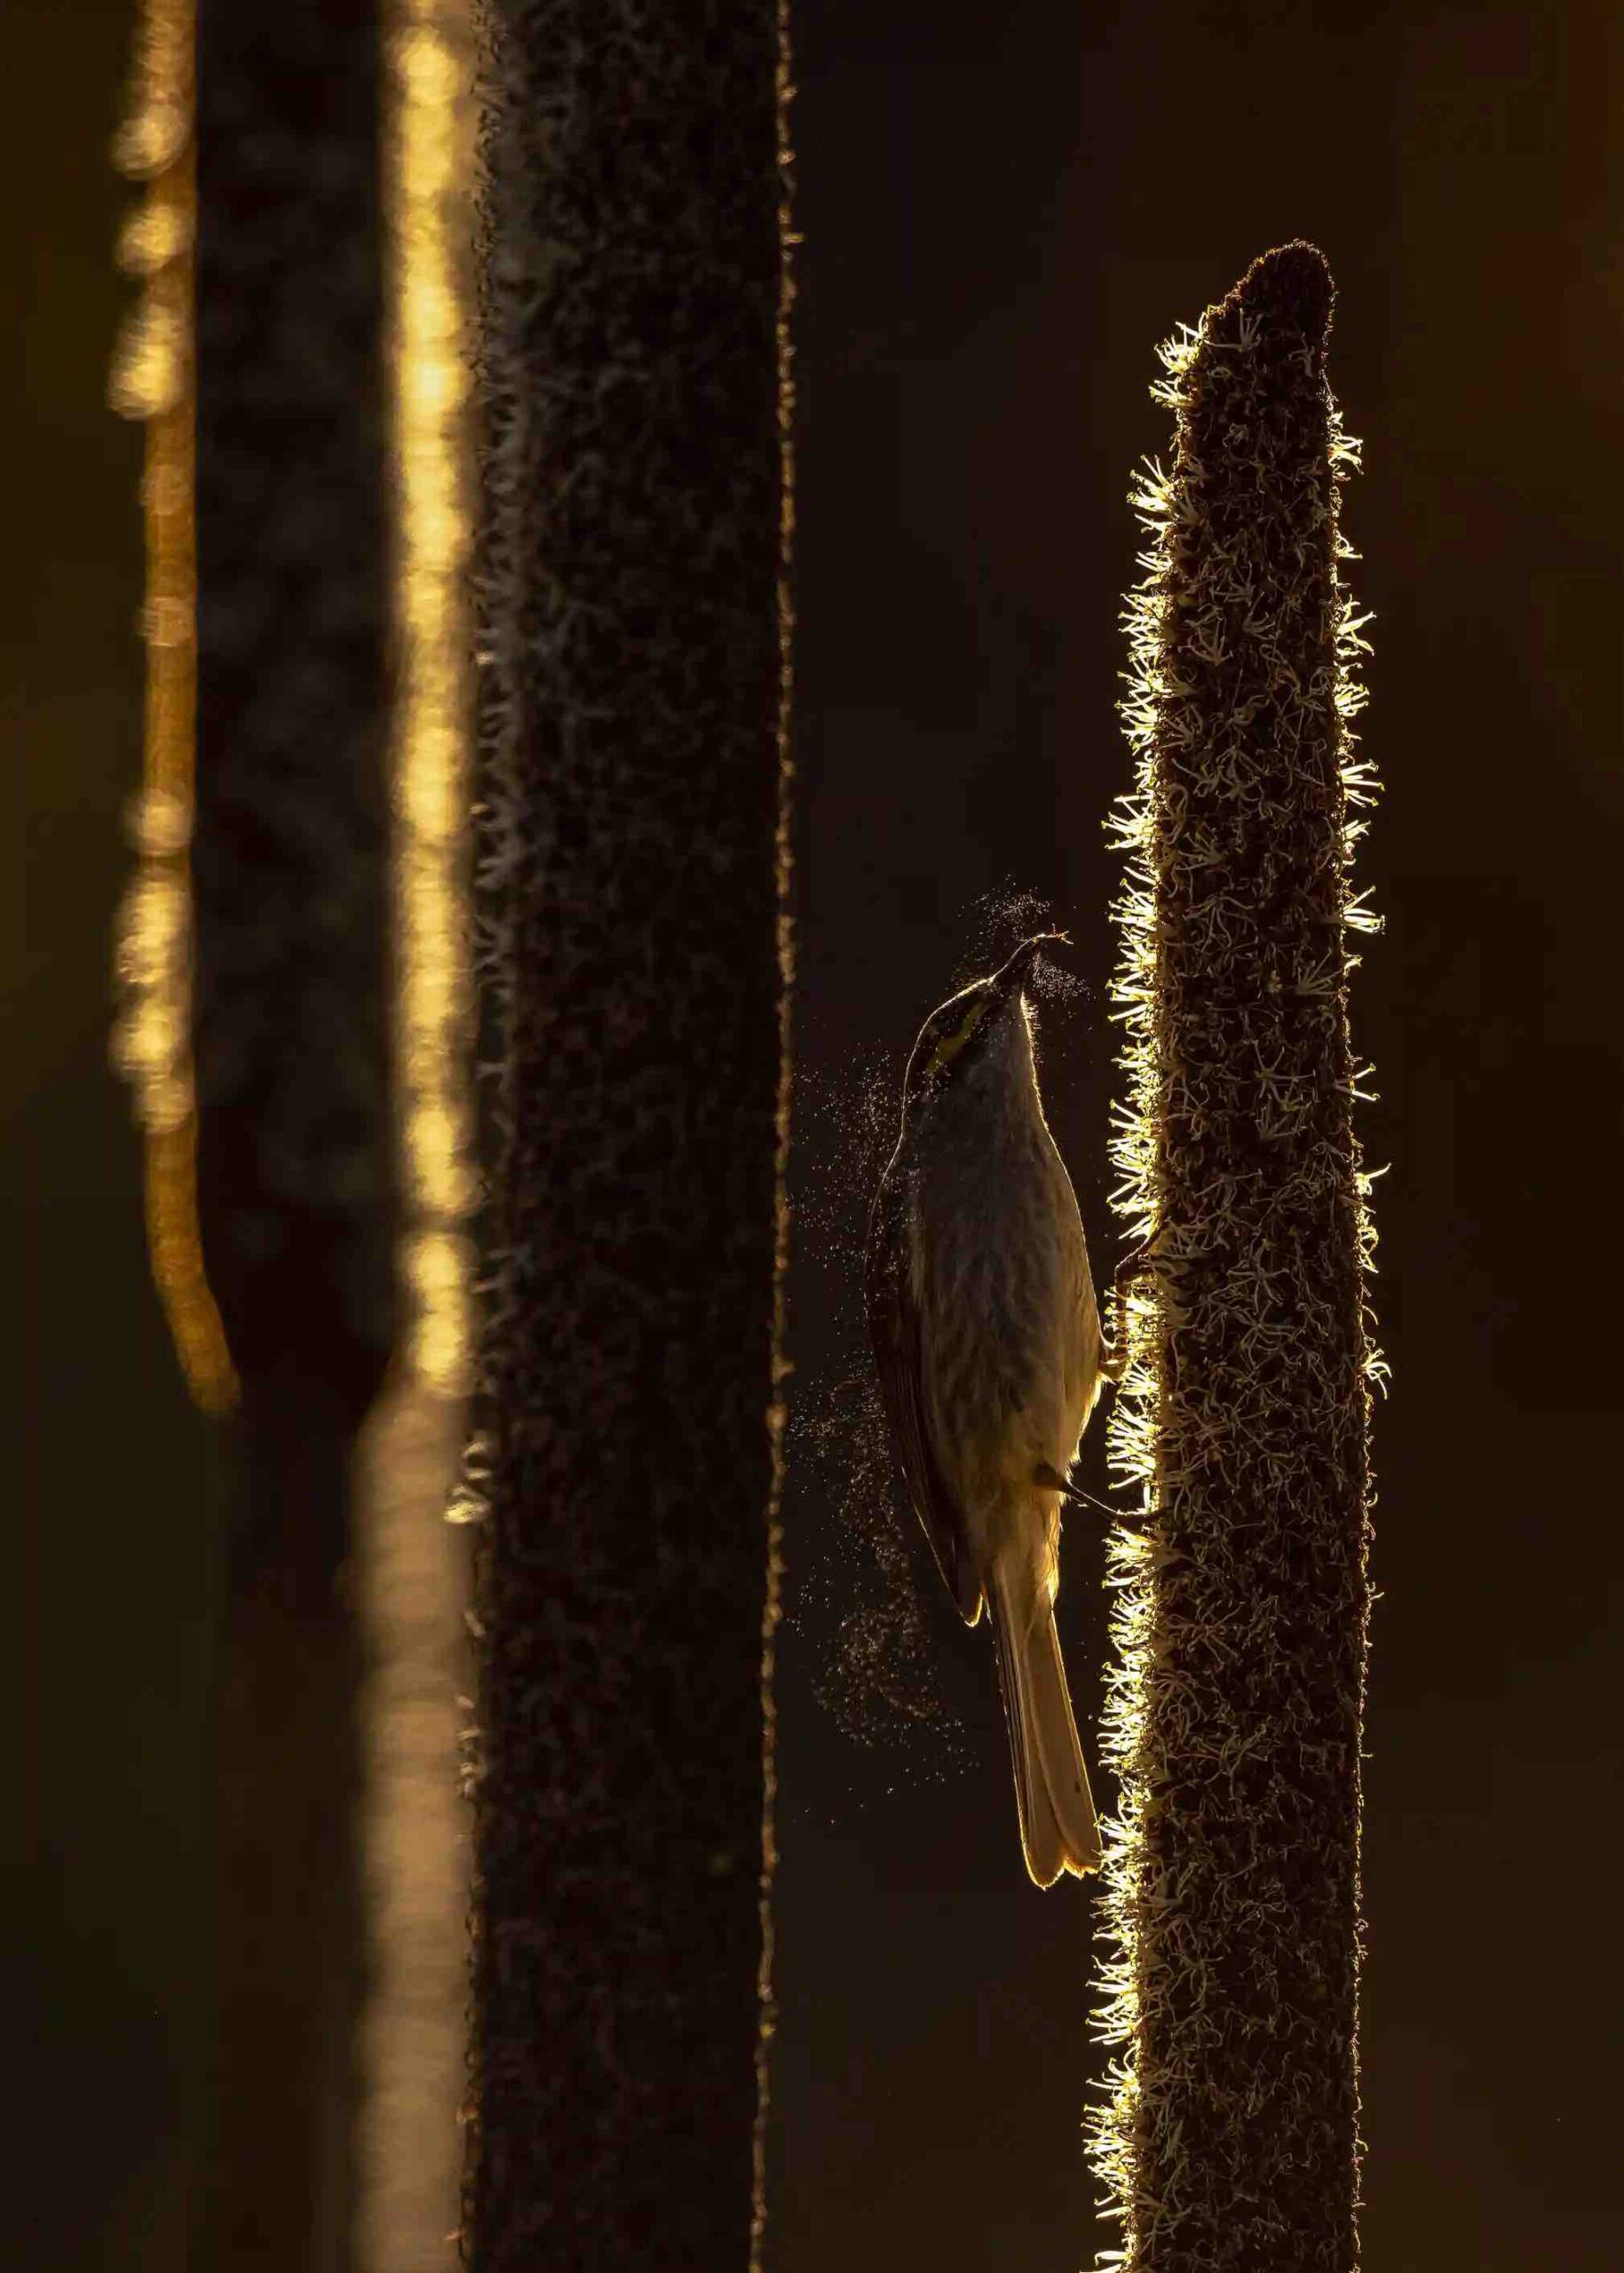 Pássaro sugando pólen em árvore, foto premiada no Birdlife Australia Photo Awards 